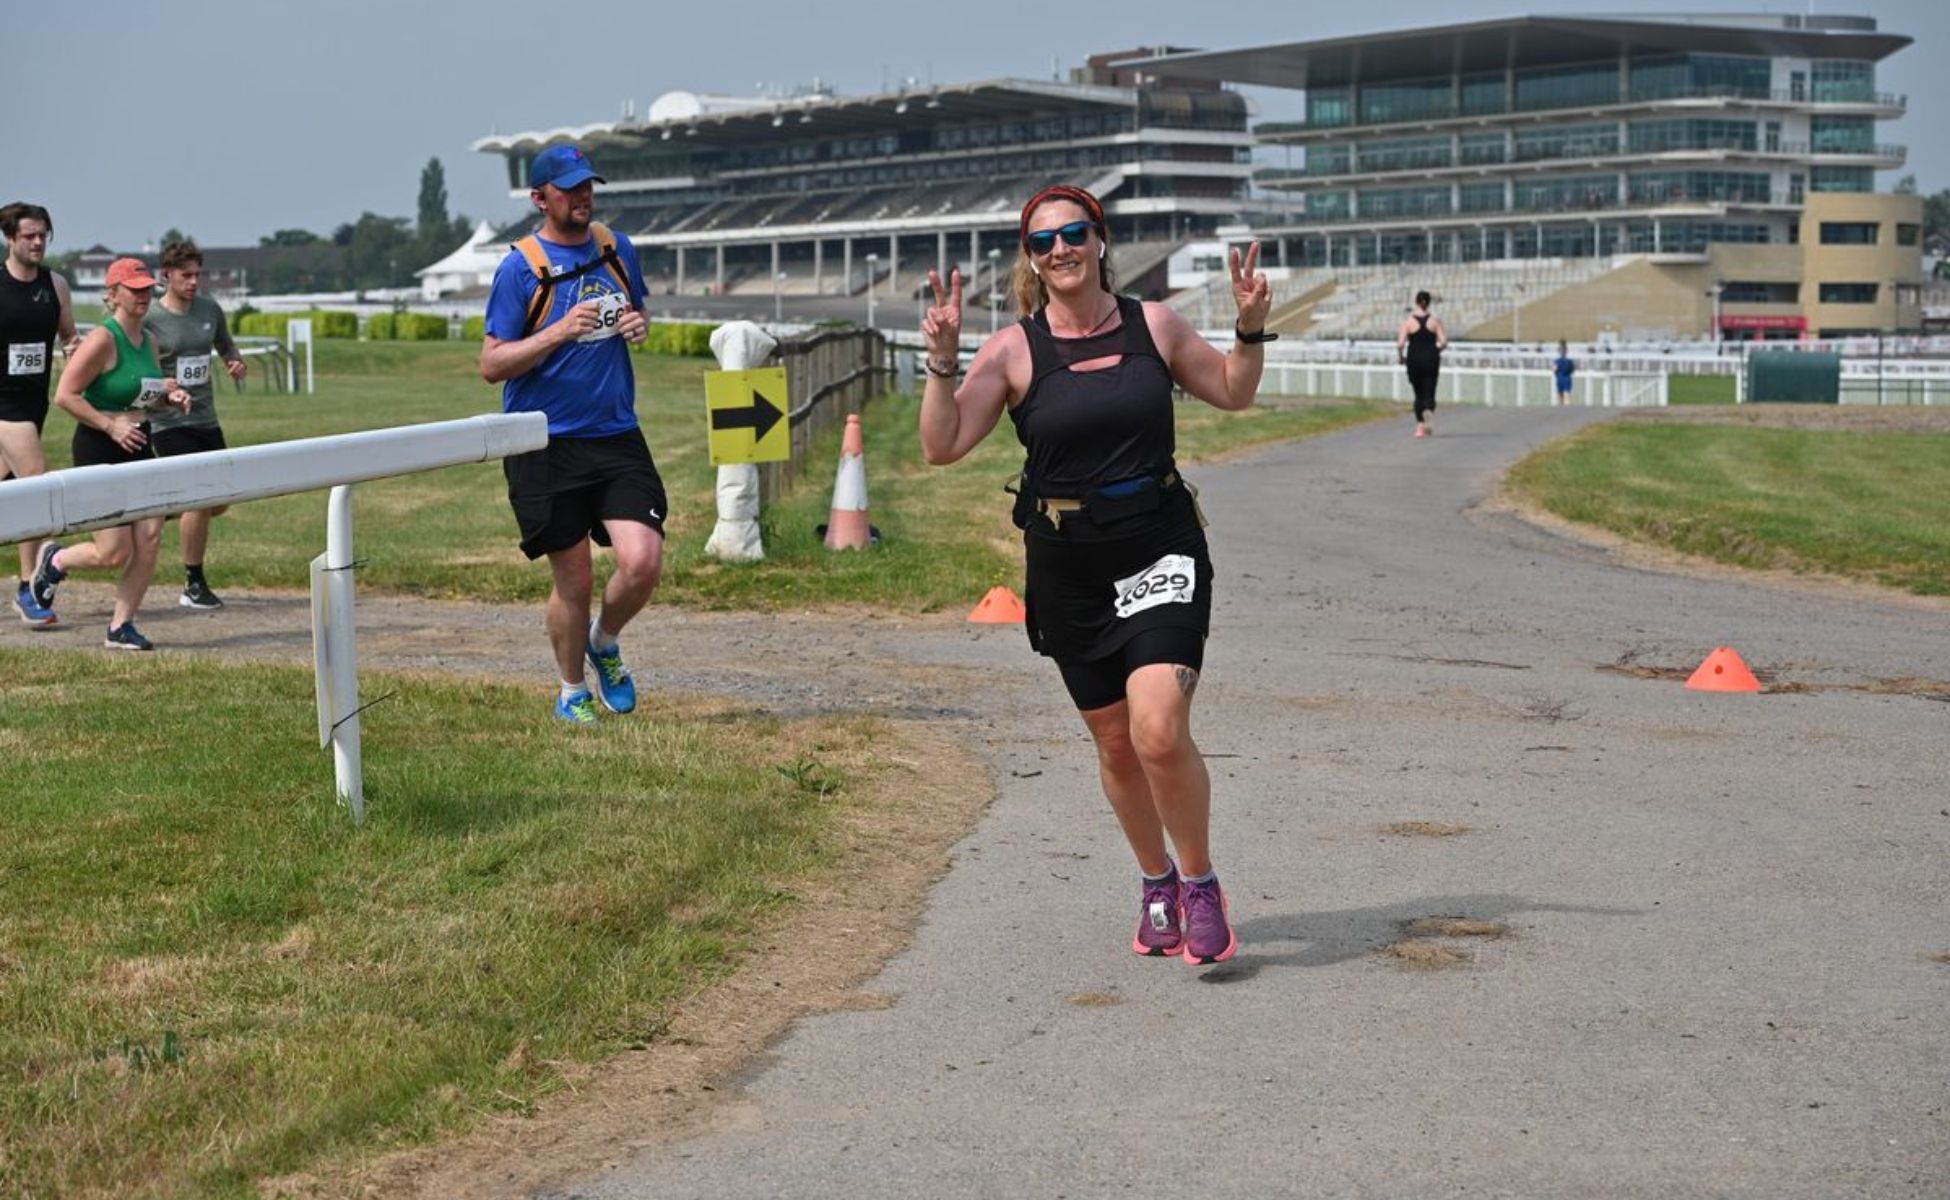 Runner at the Cheltenham Running Festival giving peace signs as she runs